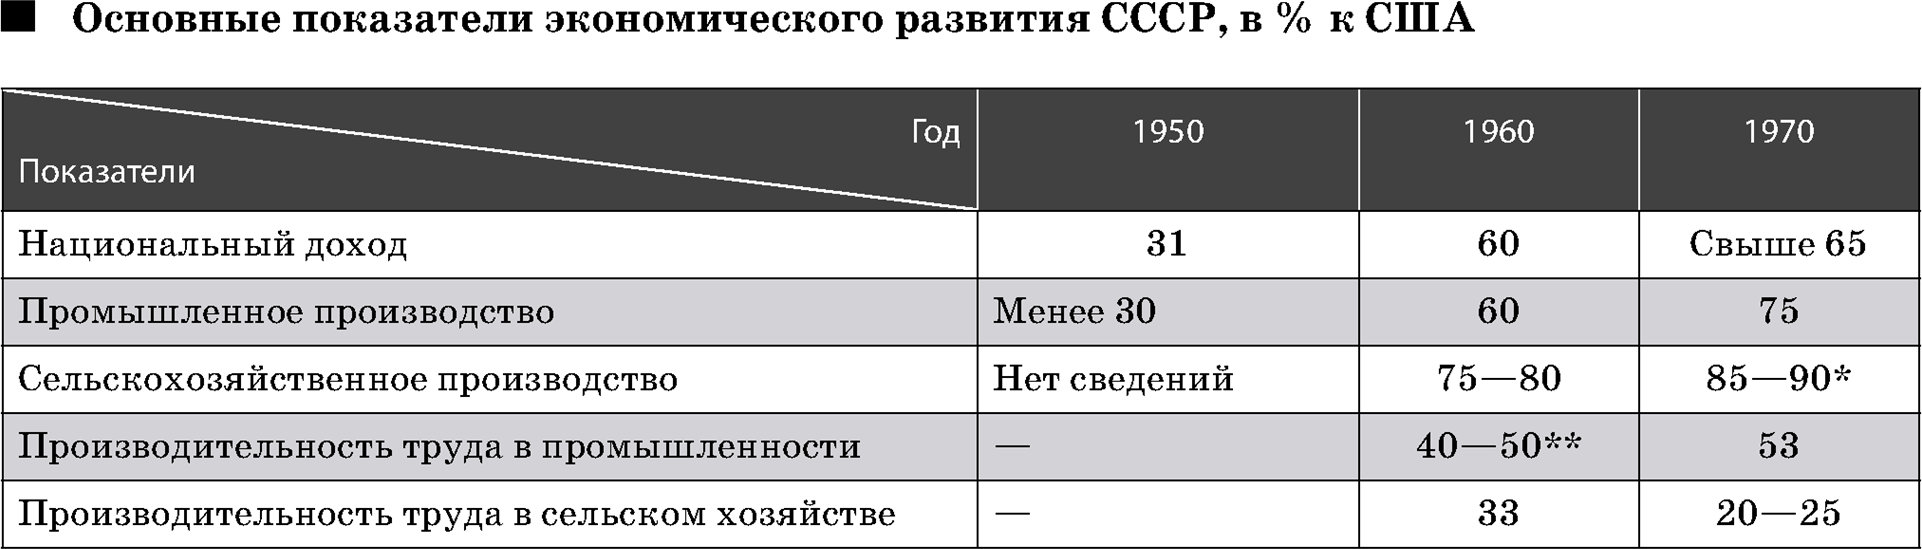 Основные показатели экономического развития СССР, в % к США